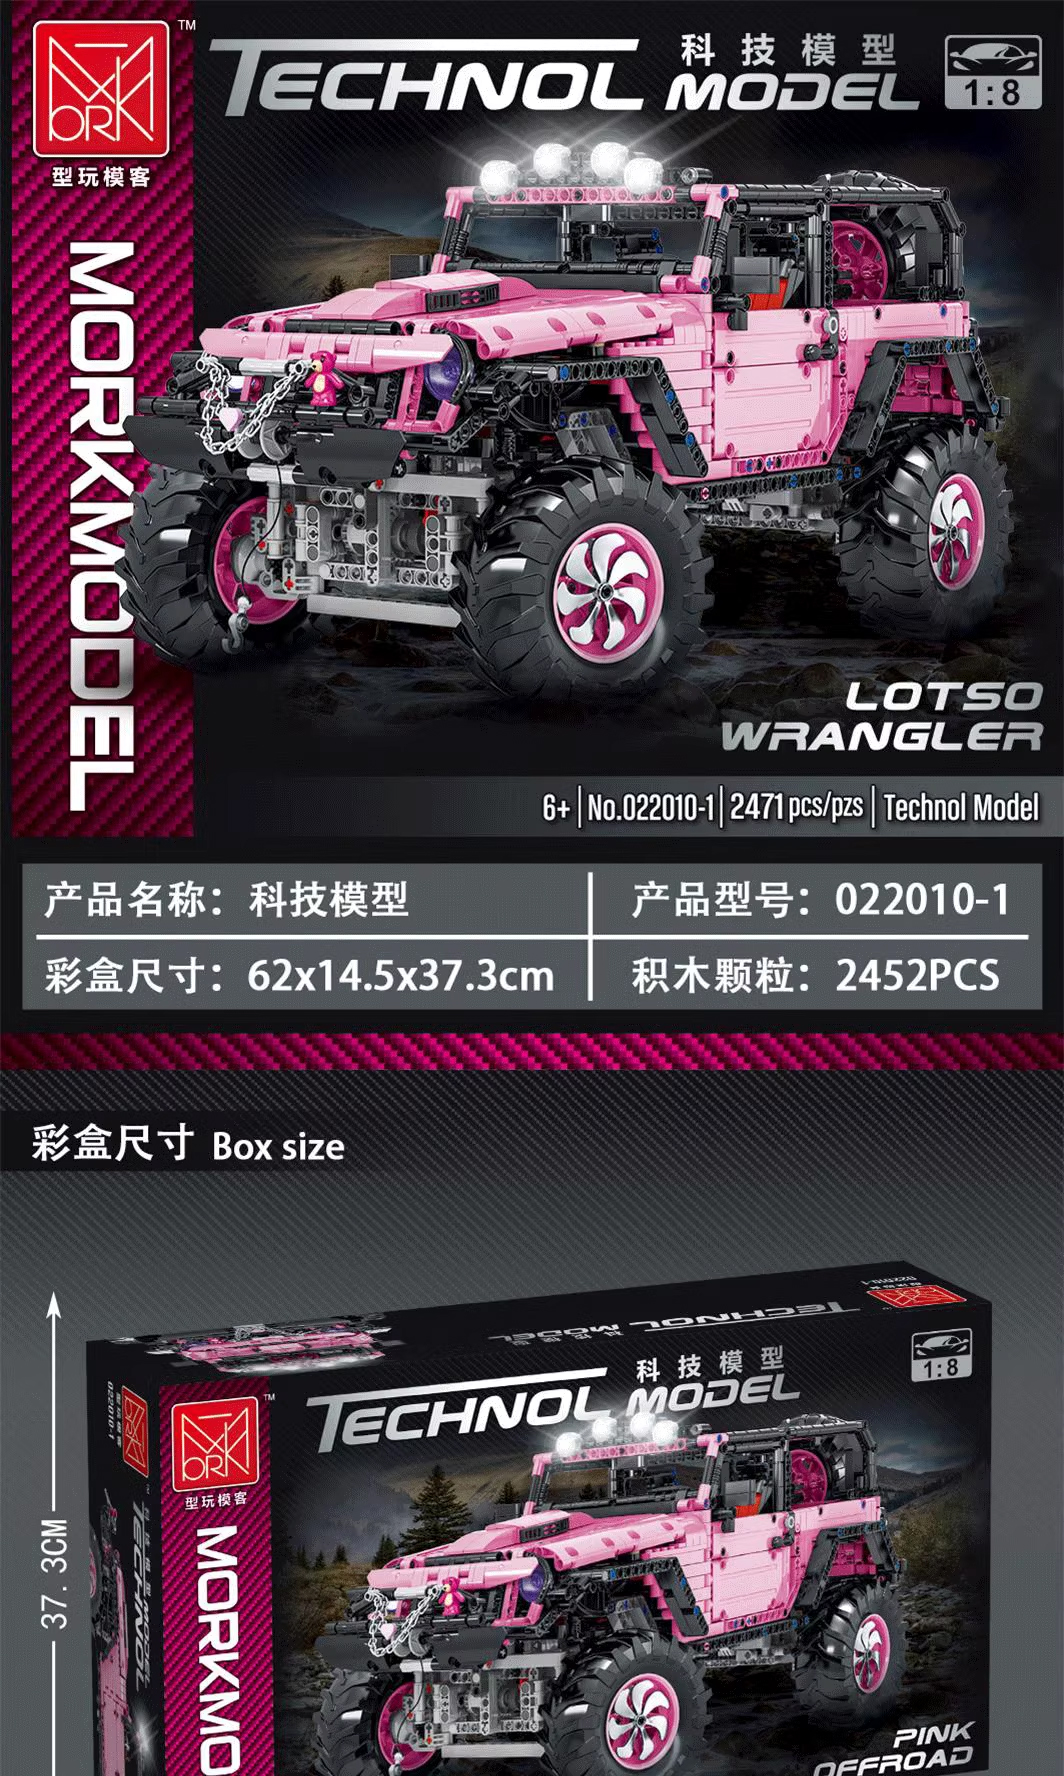 MORK 022010-1 Juego de juguetes de ladrillos de construcción para vehículos todoterreno, color rosa